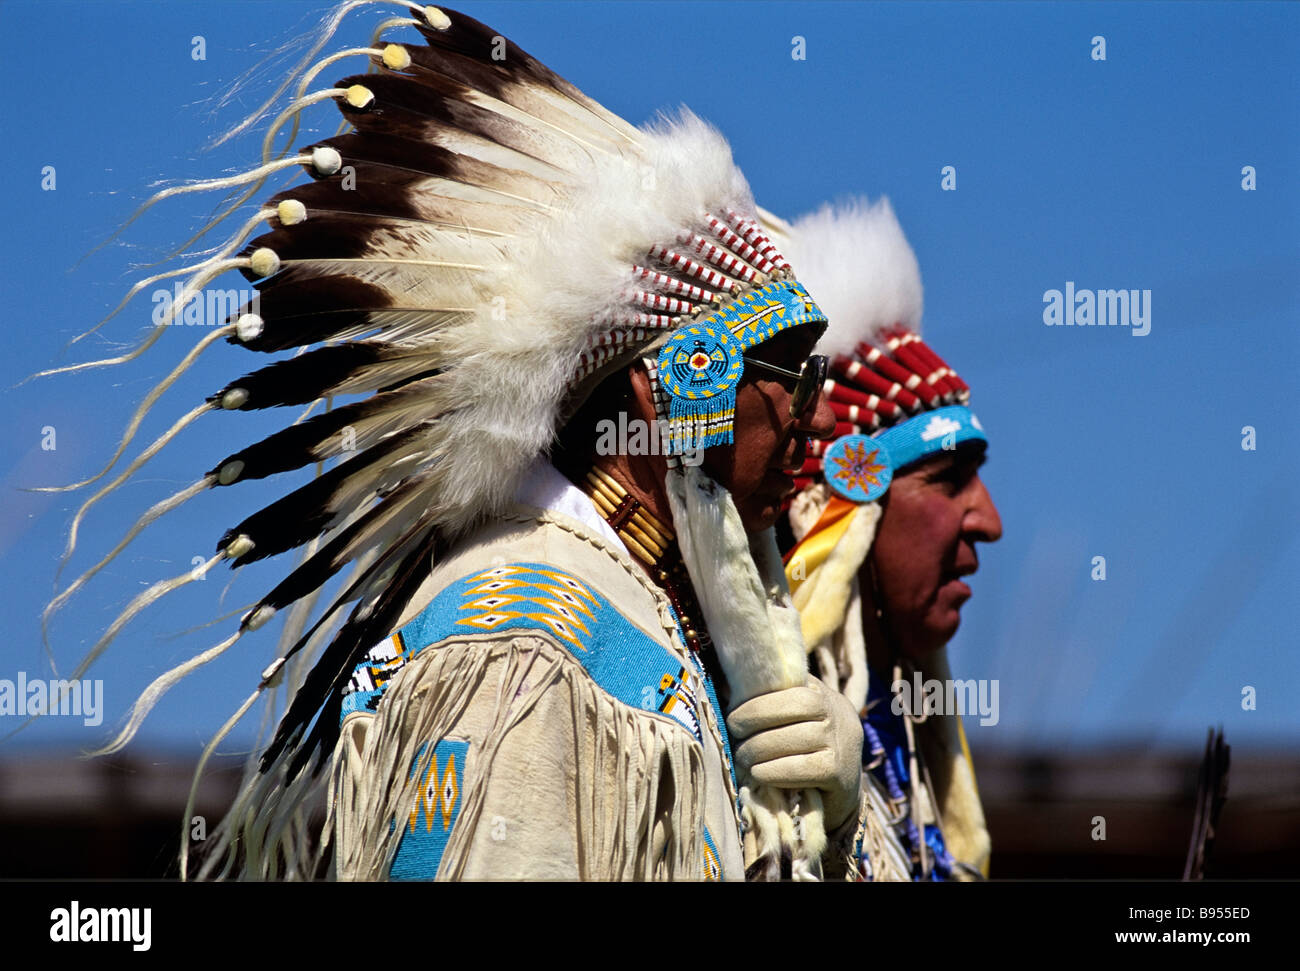 Indiens des plaines de l'Amérique dans la guerre des bonnets Réservation Pieds-noirs Browning Montana USA Banque D'Images